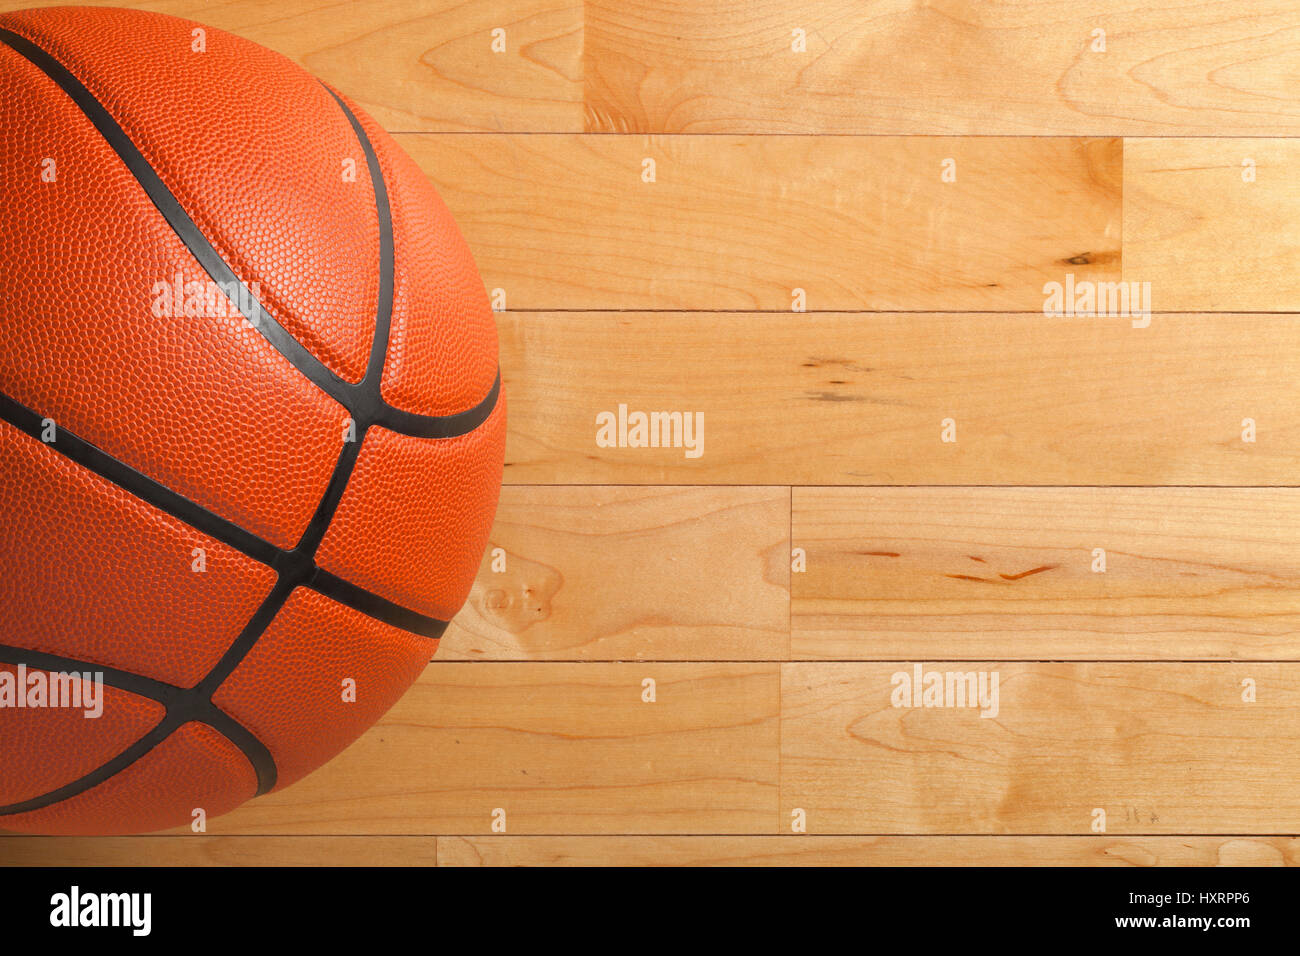 Ein Basketball auf einem hölzernen Turnhalle Boden von oben gesehen Stockfoto